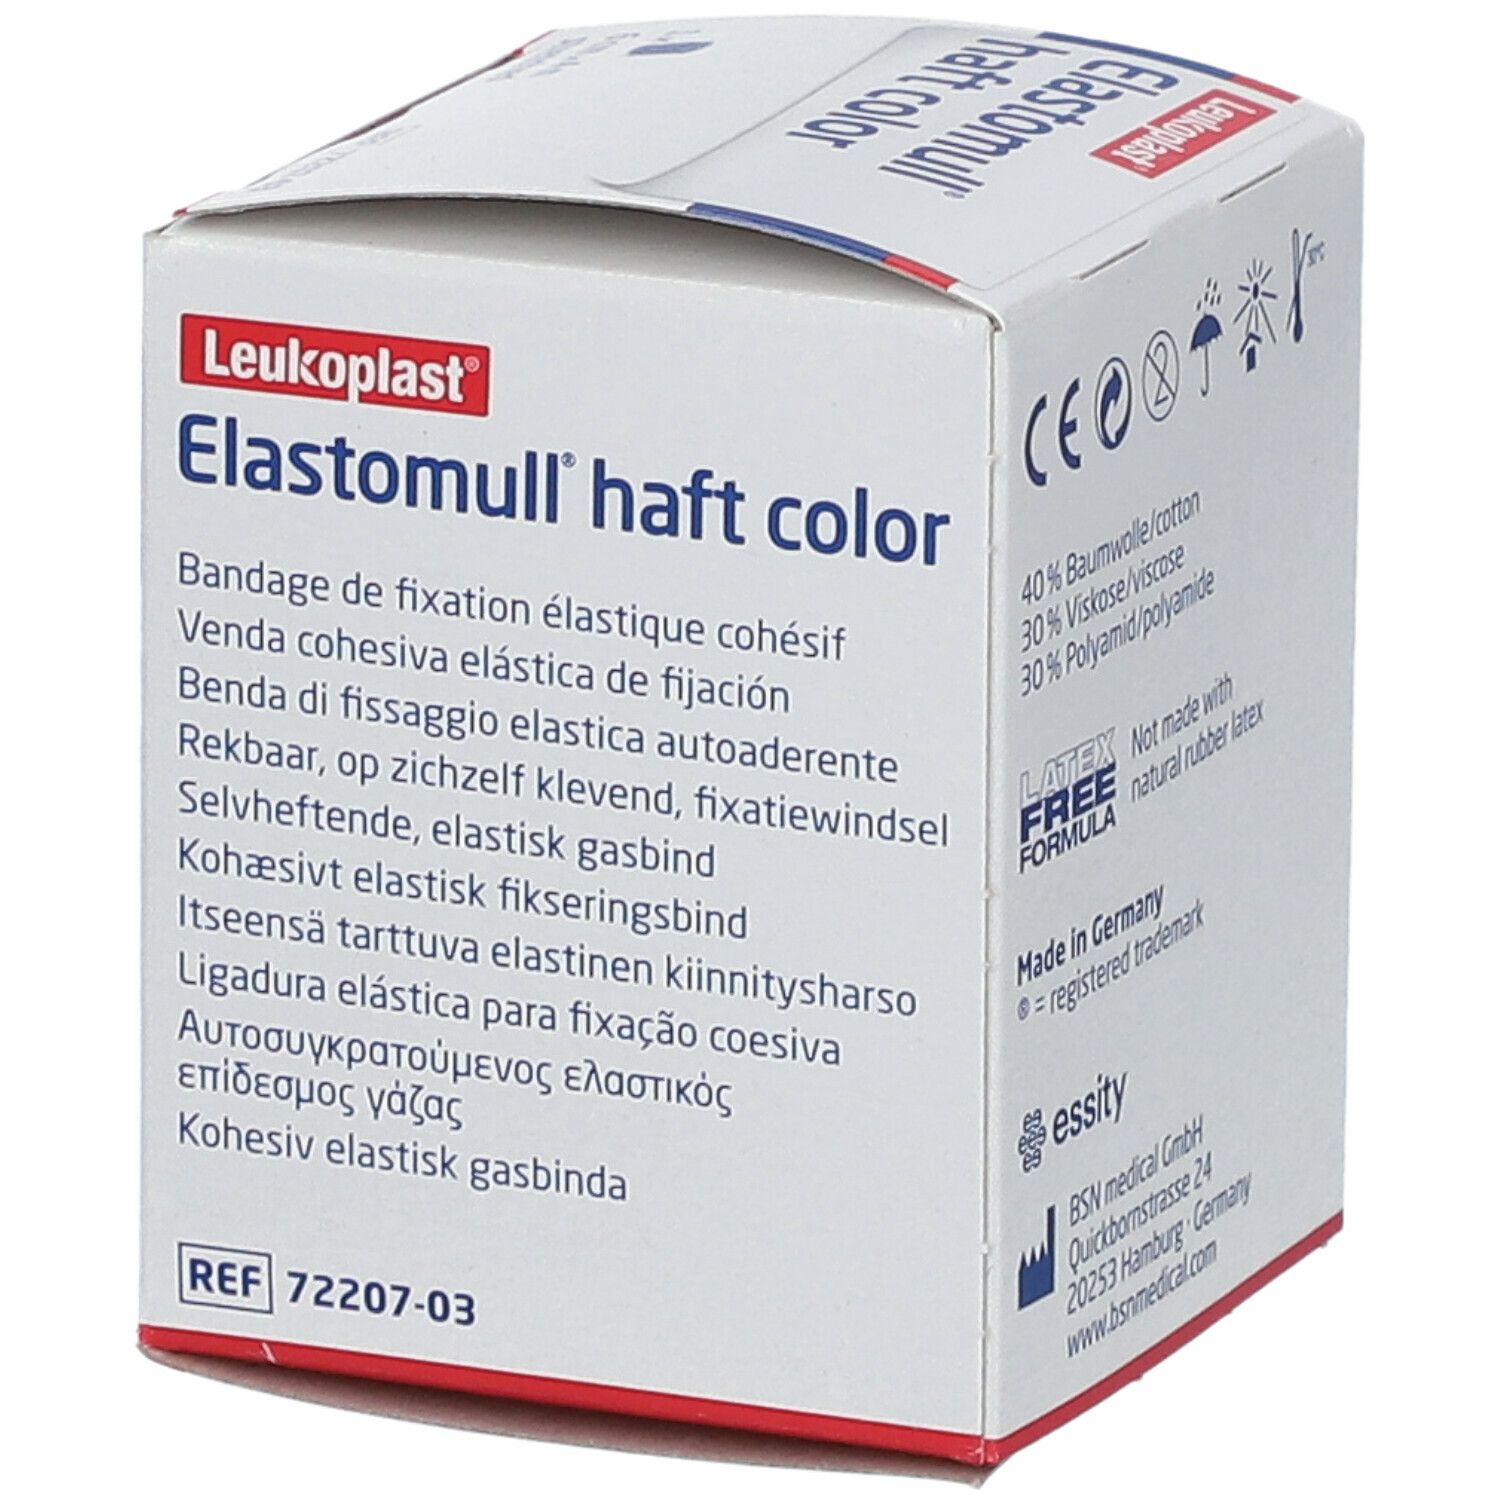 Elastomull® haft color 6 cm x 4 m blau